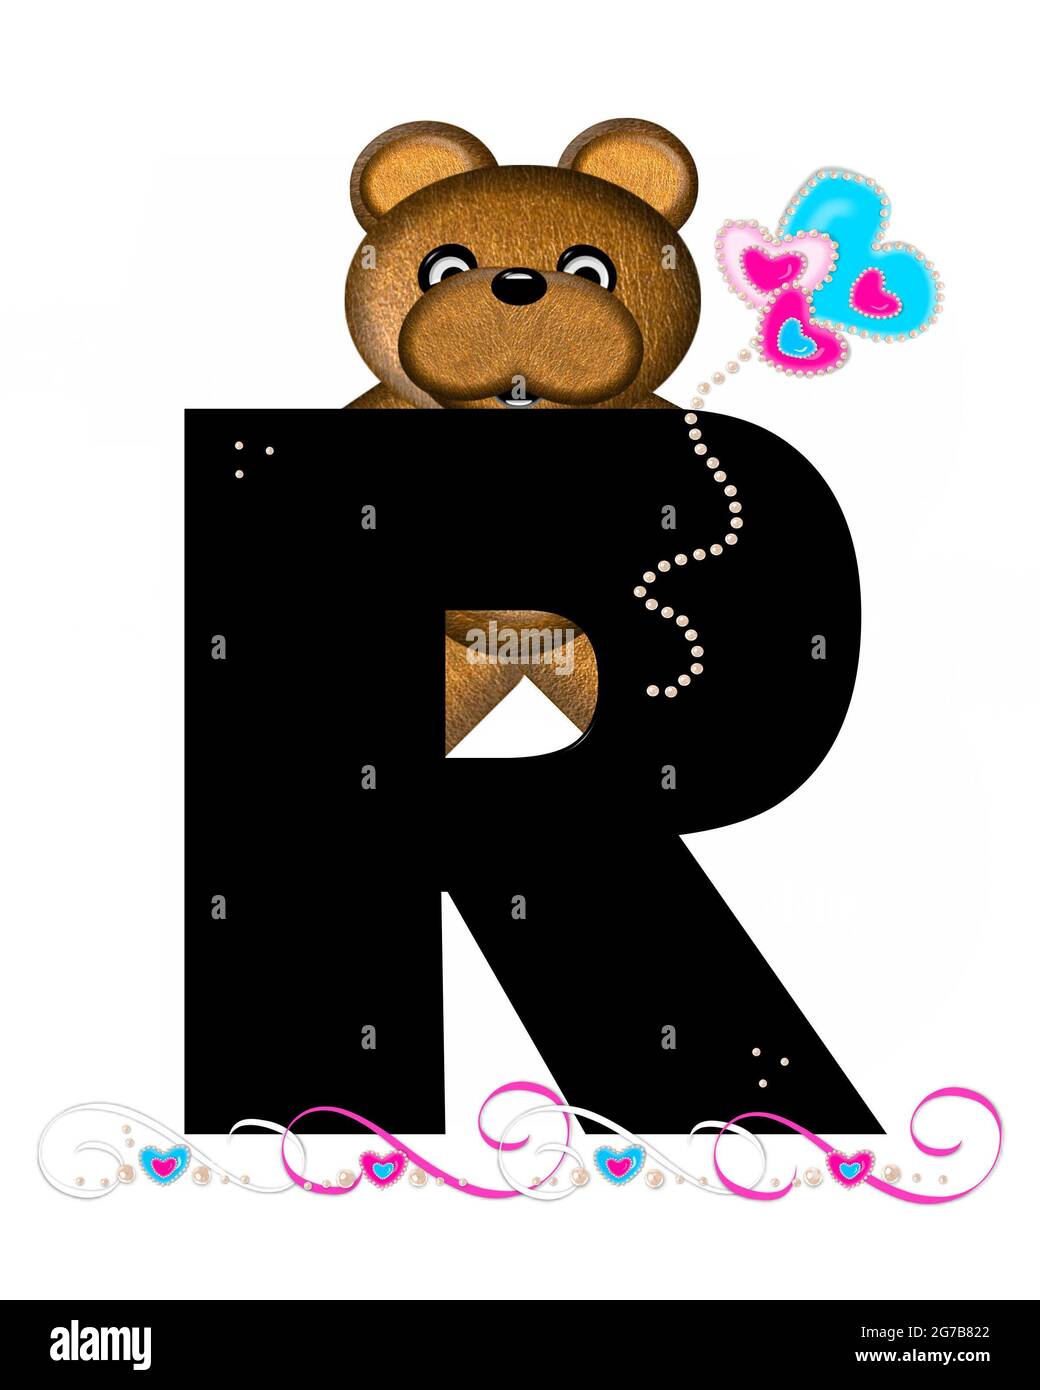 La letra R, en el conjunto del alfabeto 'Teddy Valentine's Cutie', es  negra. El oso de peluche marrón sostiene globos en forma de corazón en rosa  y azul. Cuerda de pera Fotografía